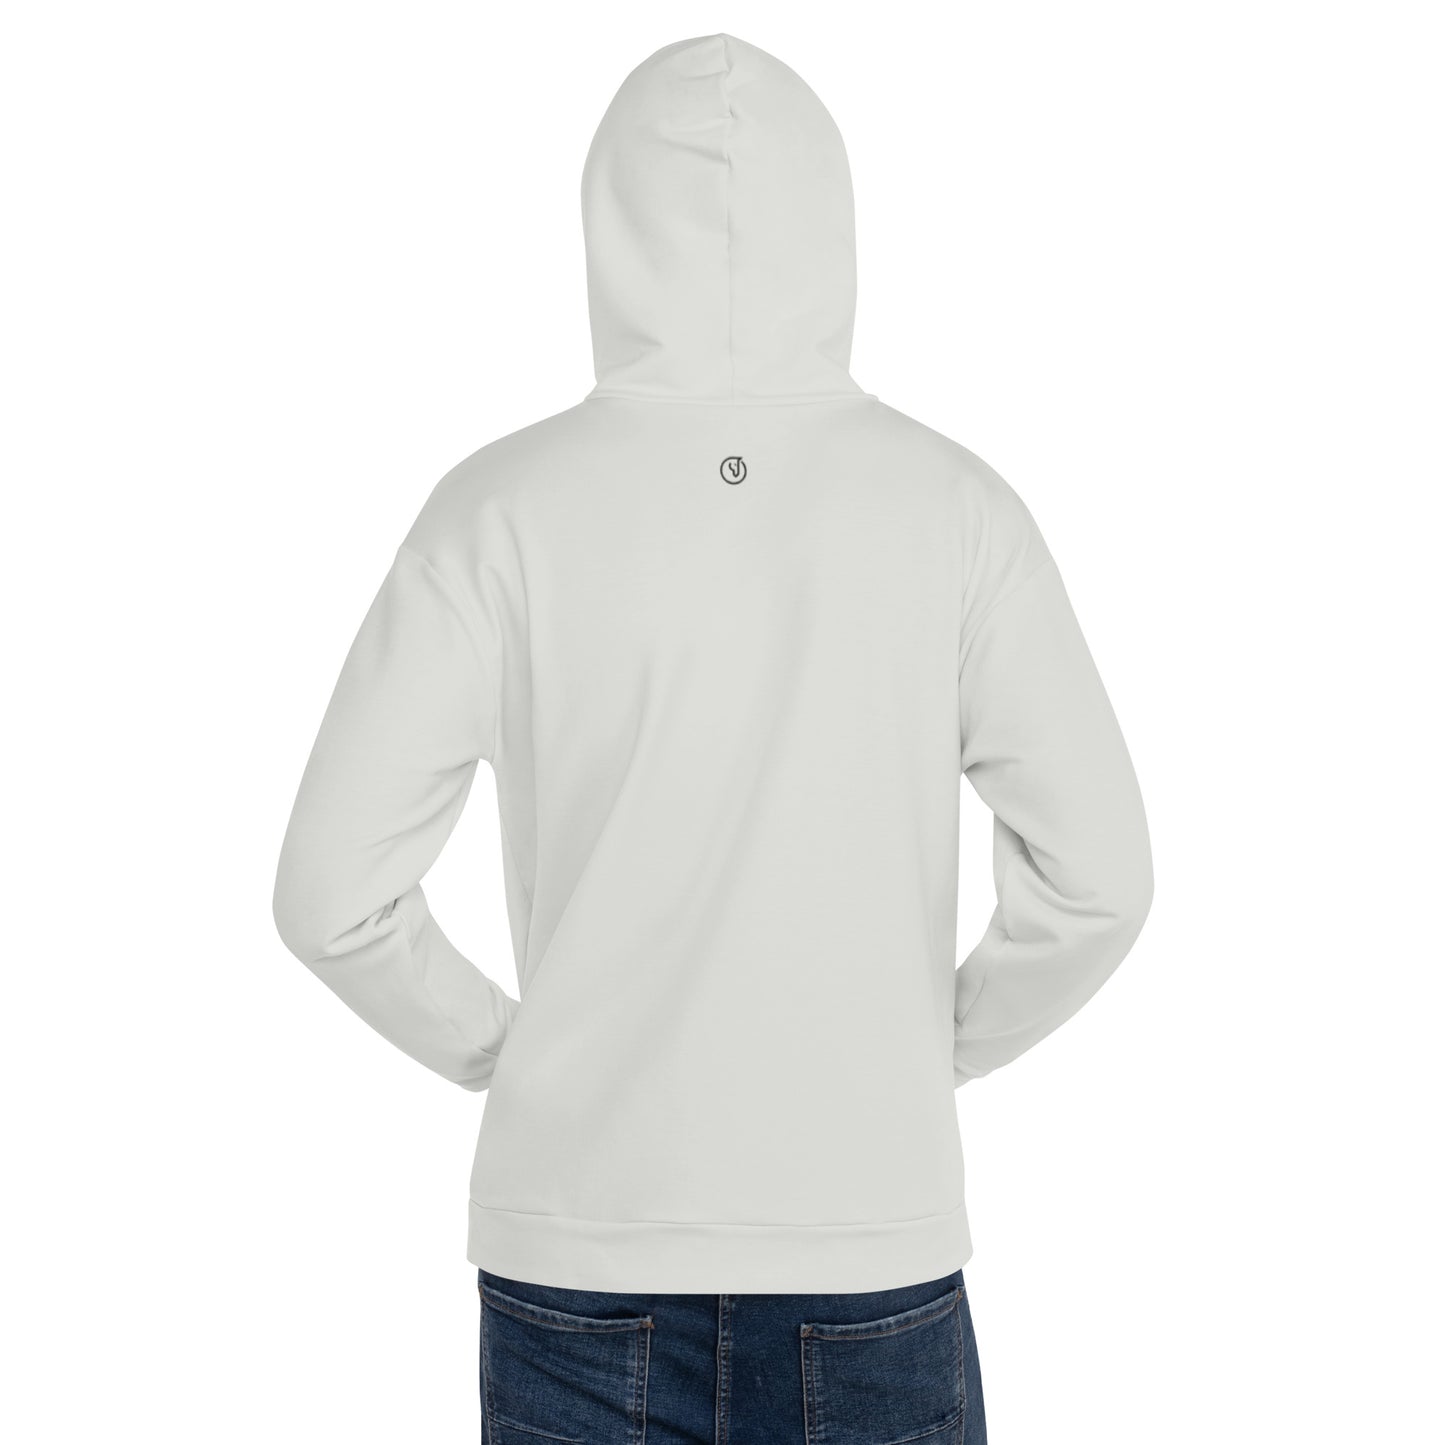 Humble Sportswear™ Men's Pearl White Fleece Hoodie - Mireille Fine Art